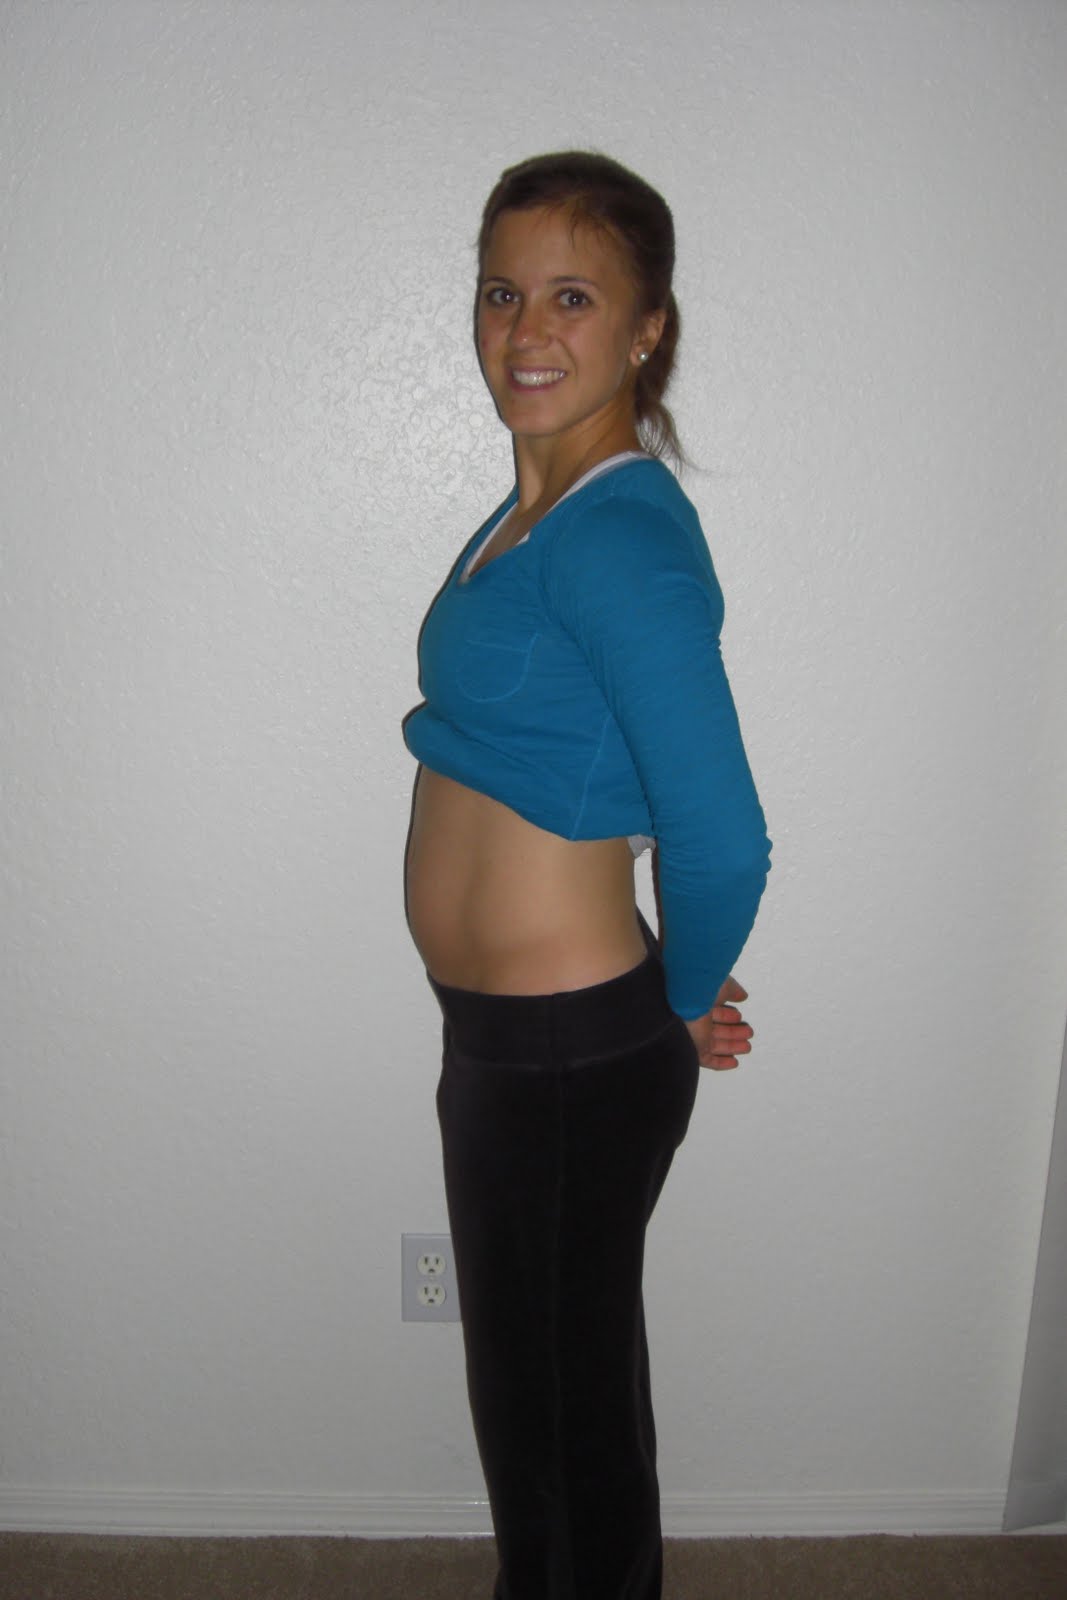 Беременность 18 недель вес